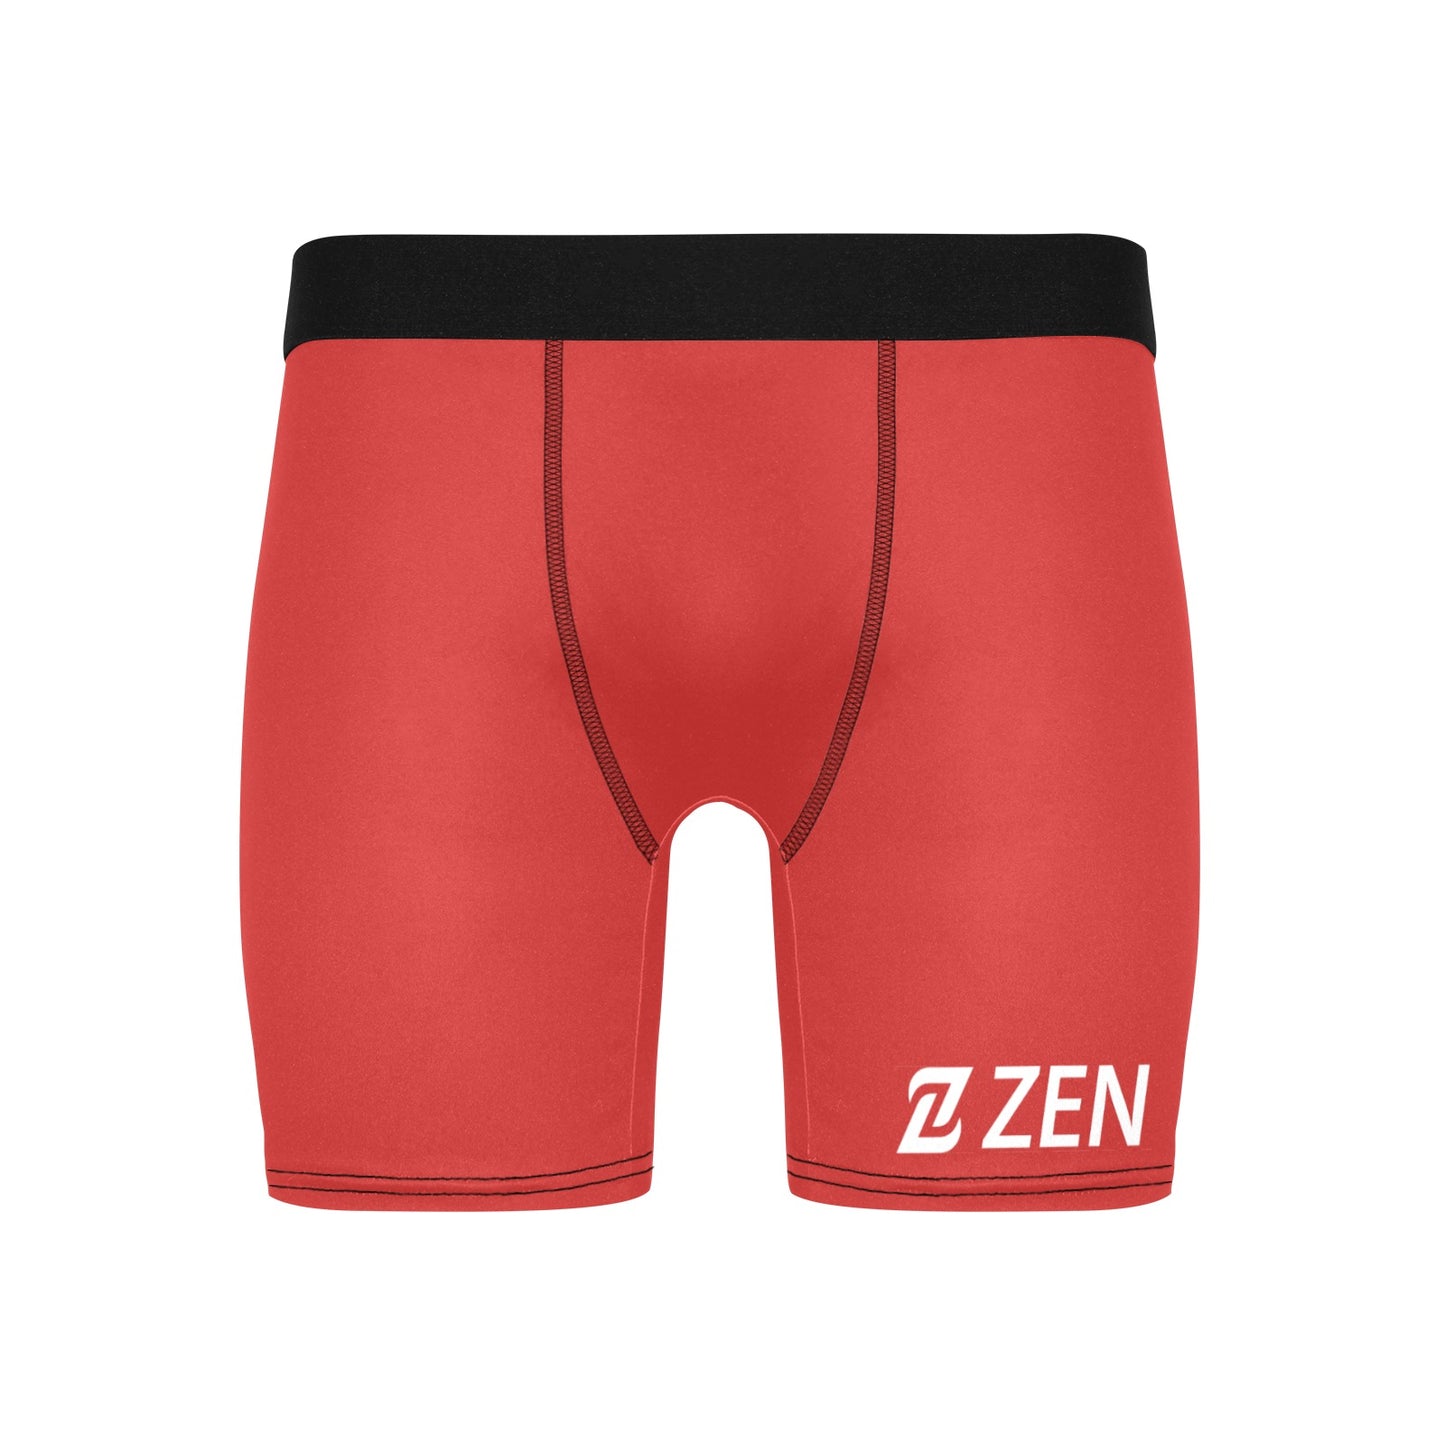 Zen Boxers Long - Red